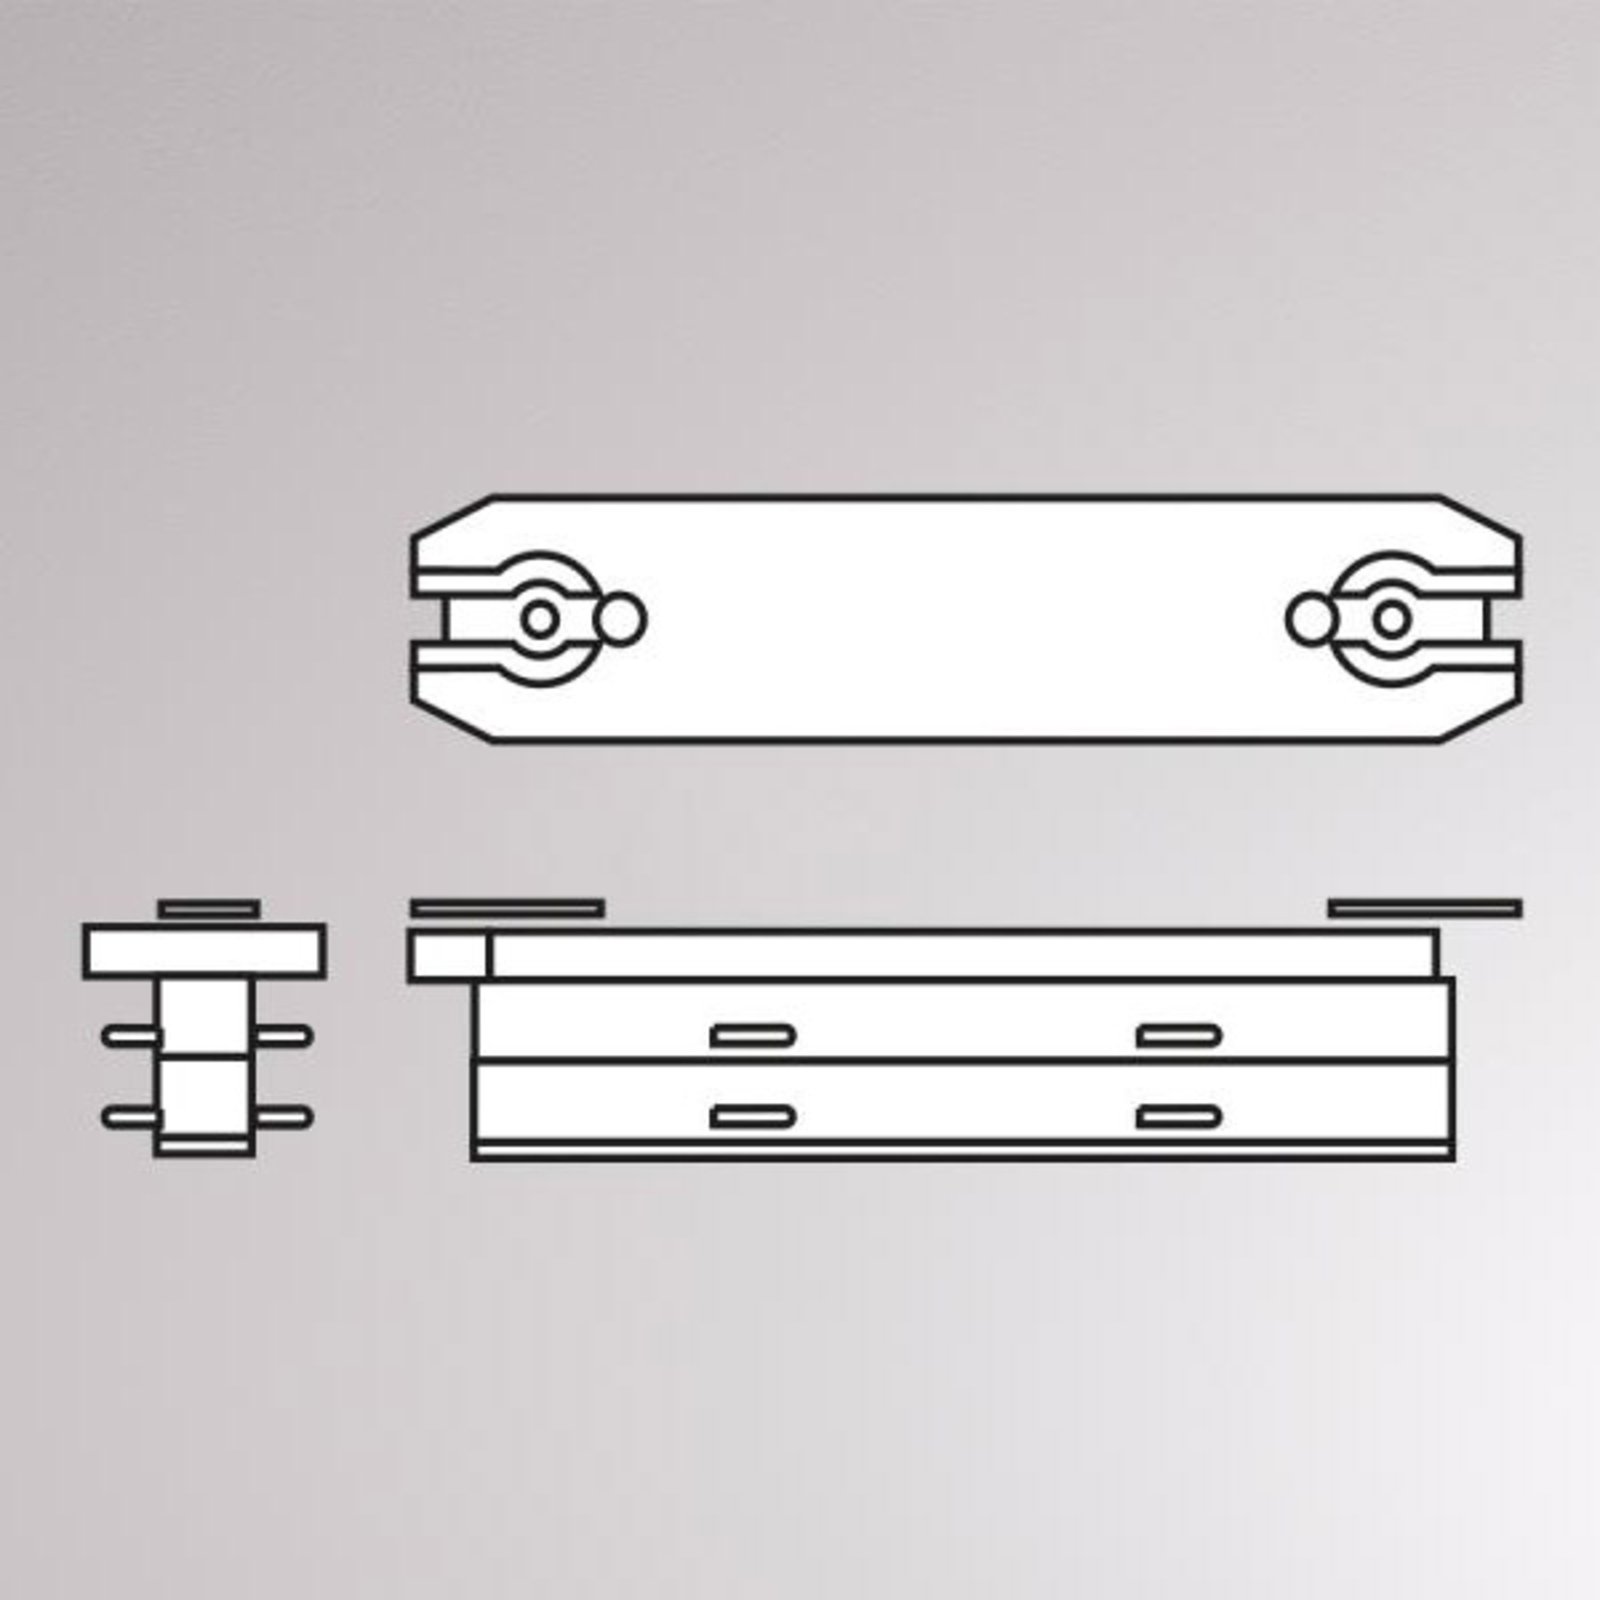 Linearverbinder für Volare Schiene, 70 mm